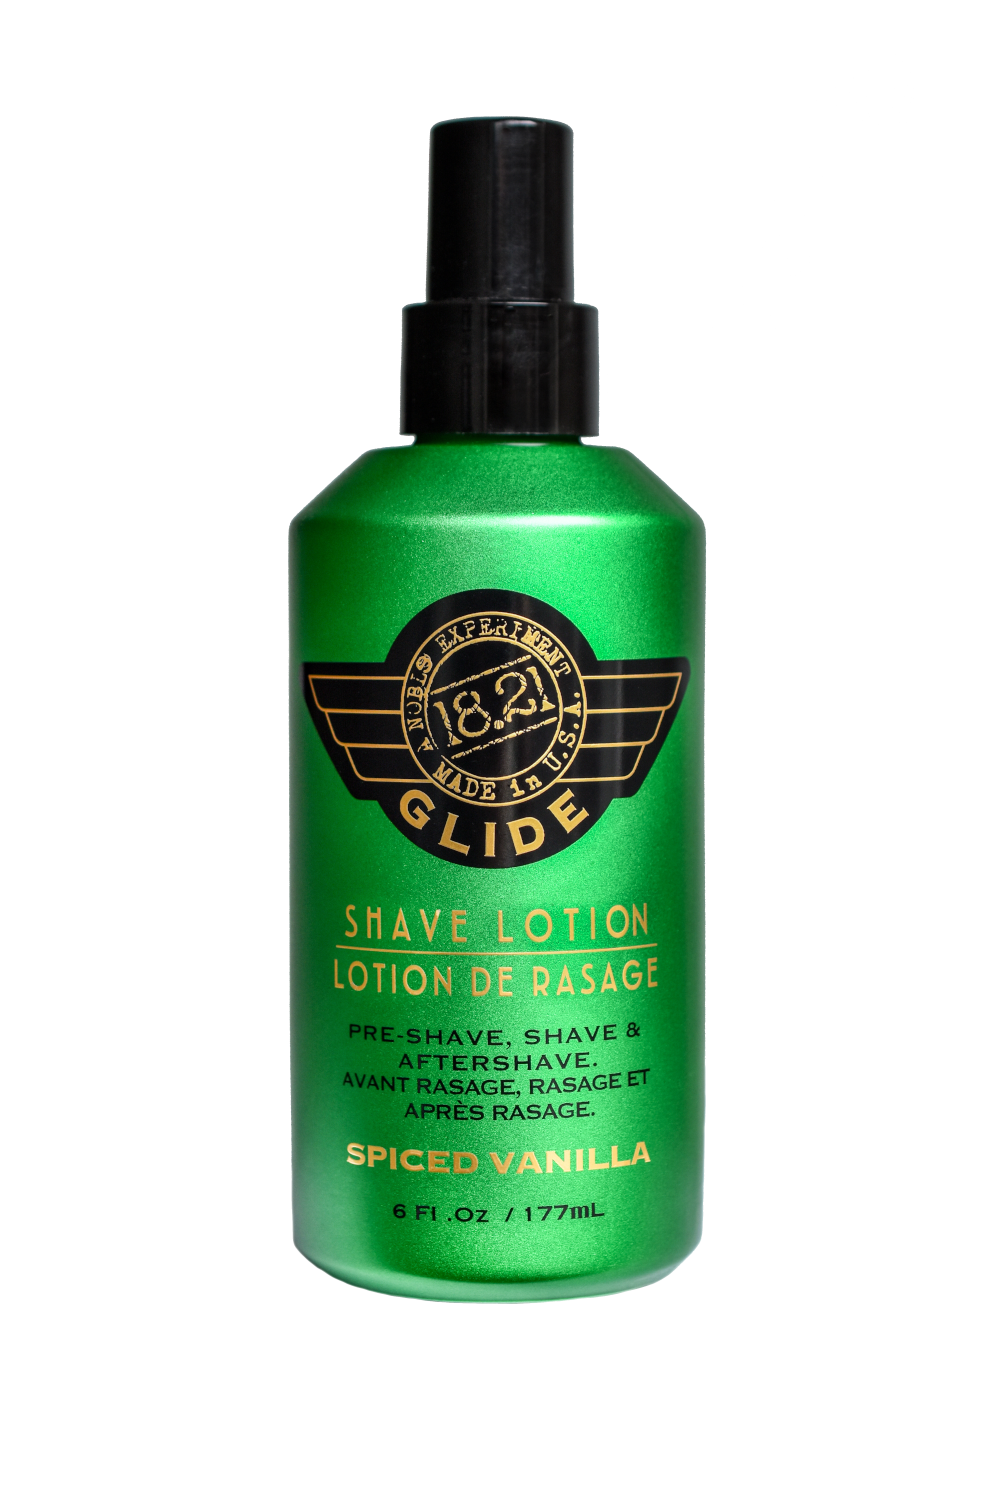 18.21 Man Made Glide Shaving Lotion Spiced Vanilla